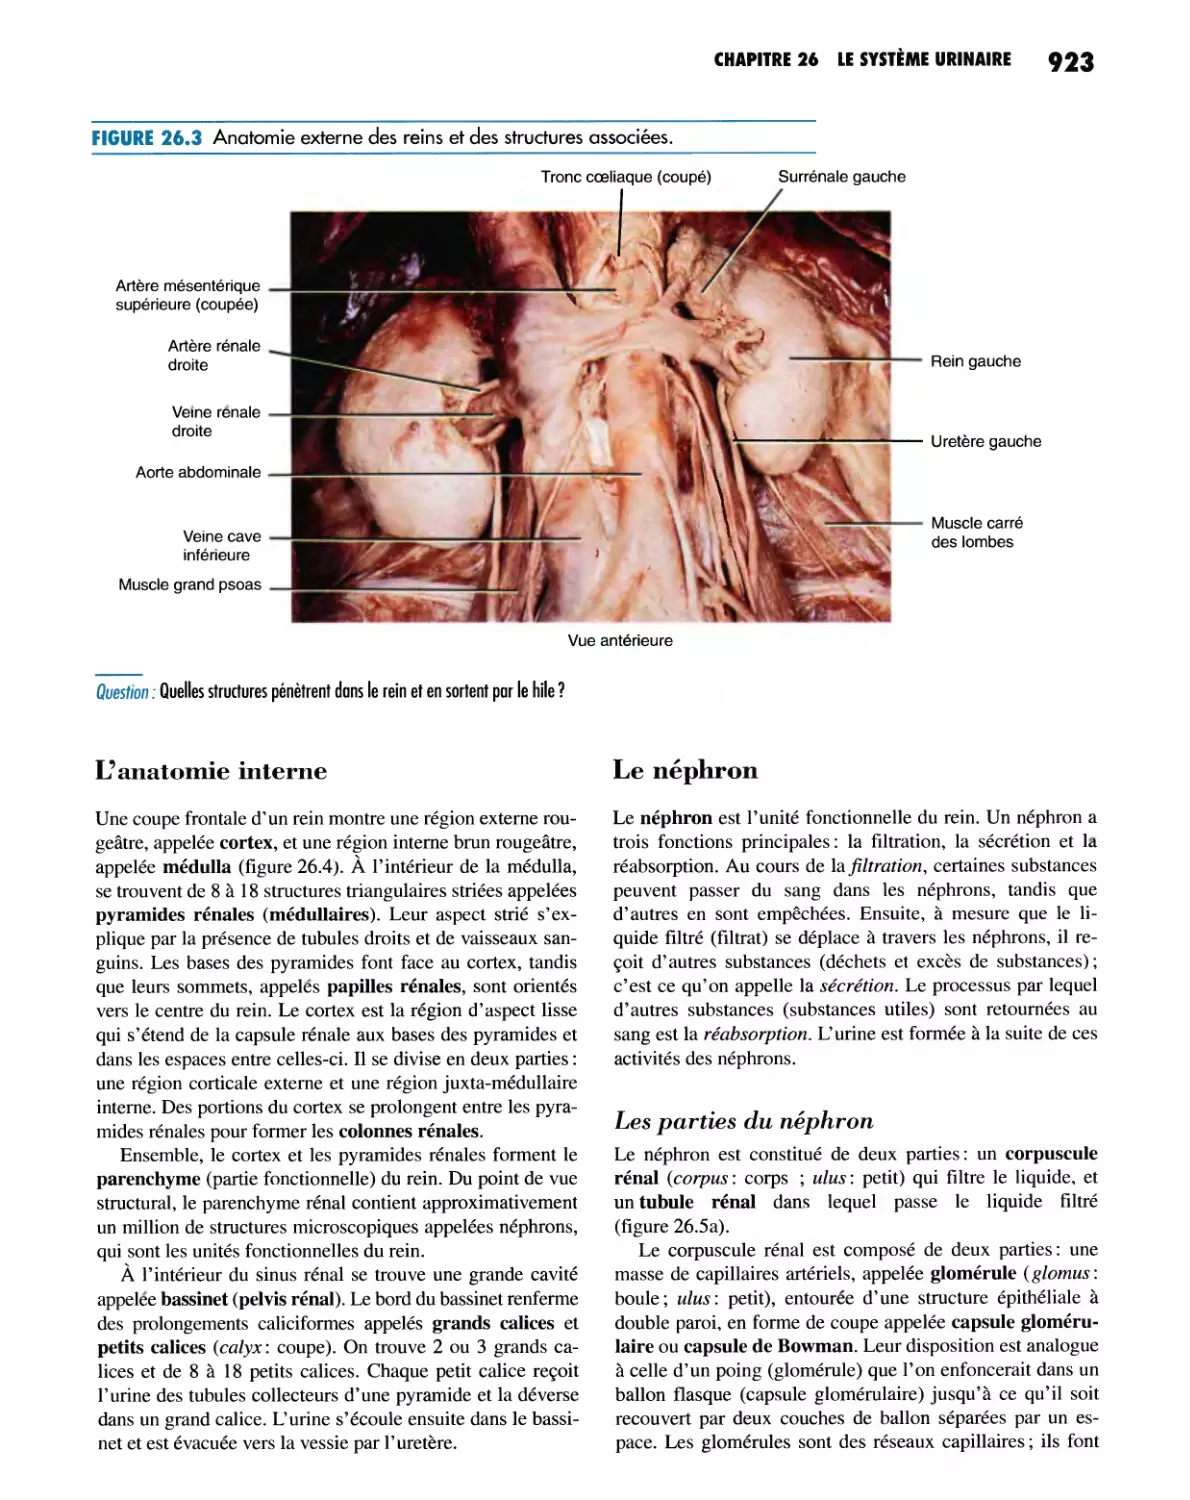 L'anatomie interne
Le néphron